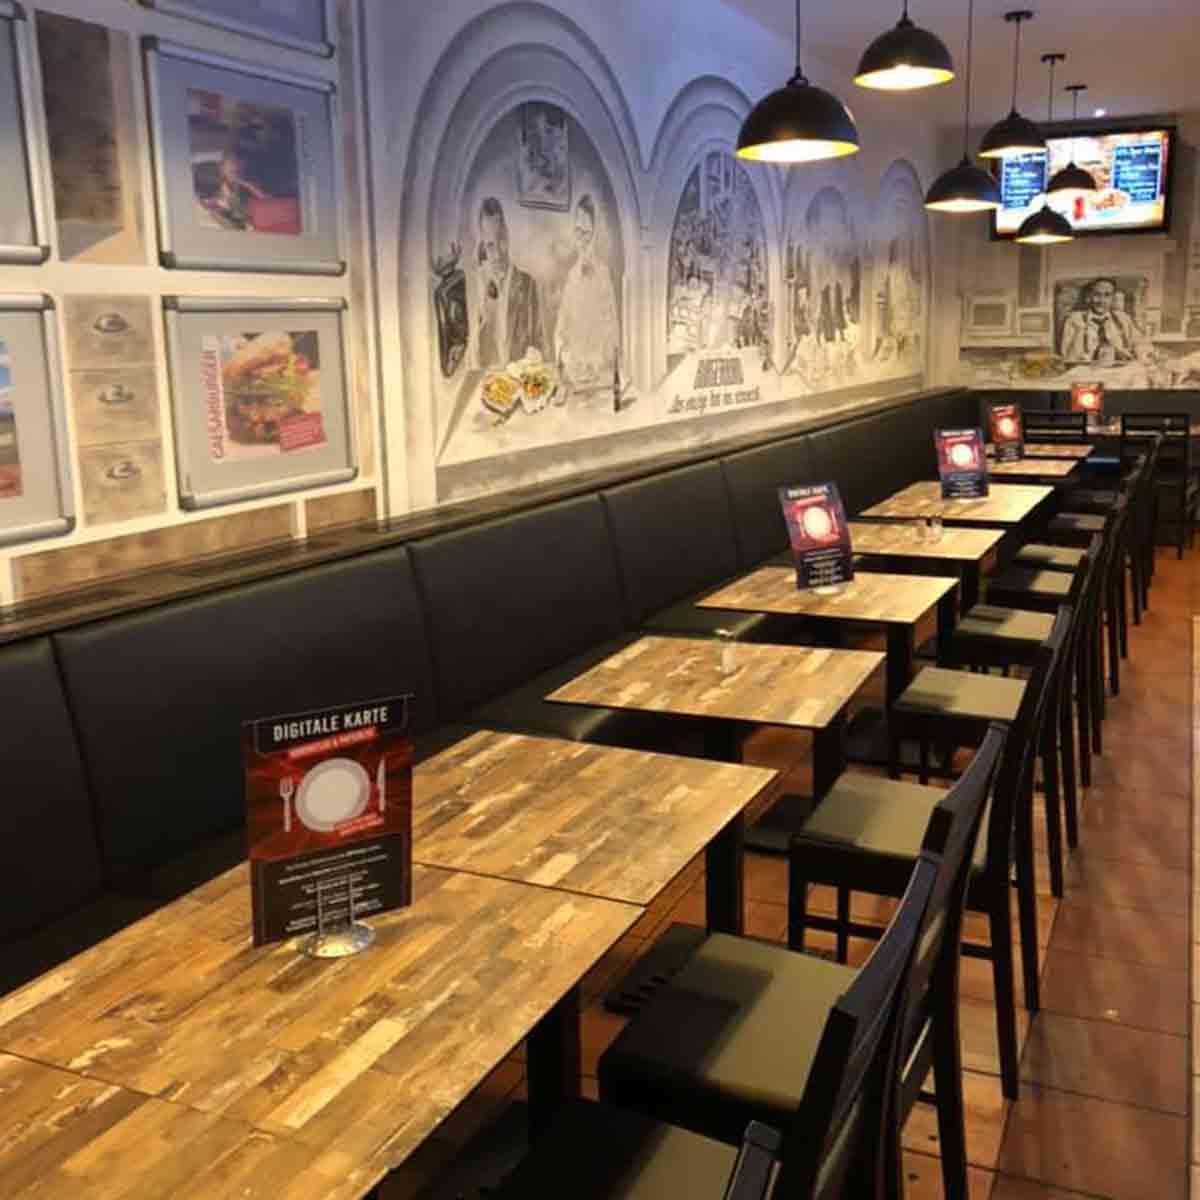 Tischaufsteller mit der digitalen Speisekarte im Innenraum eines Redo-Restaurants